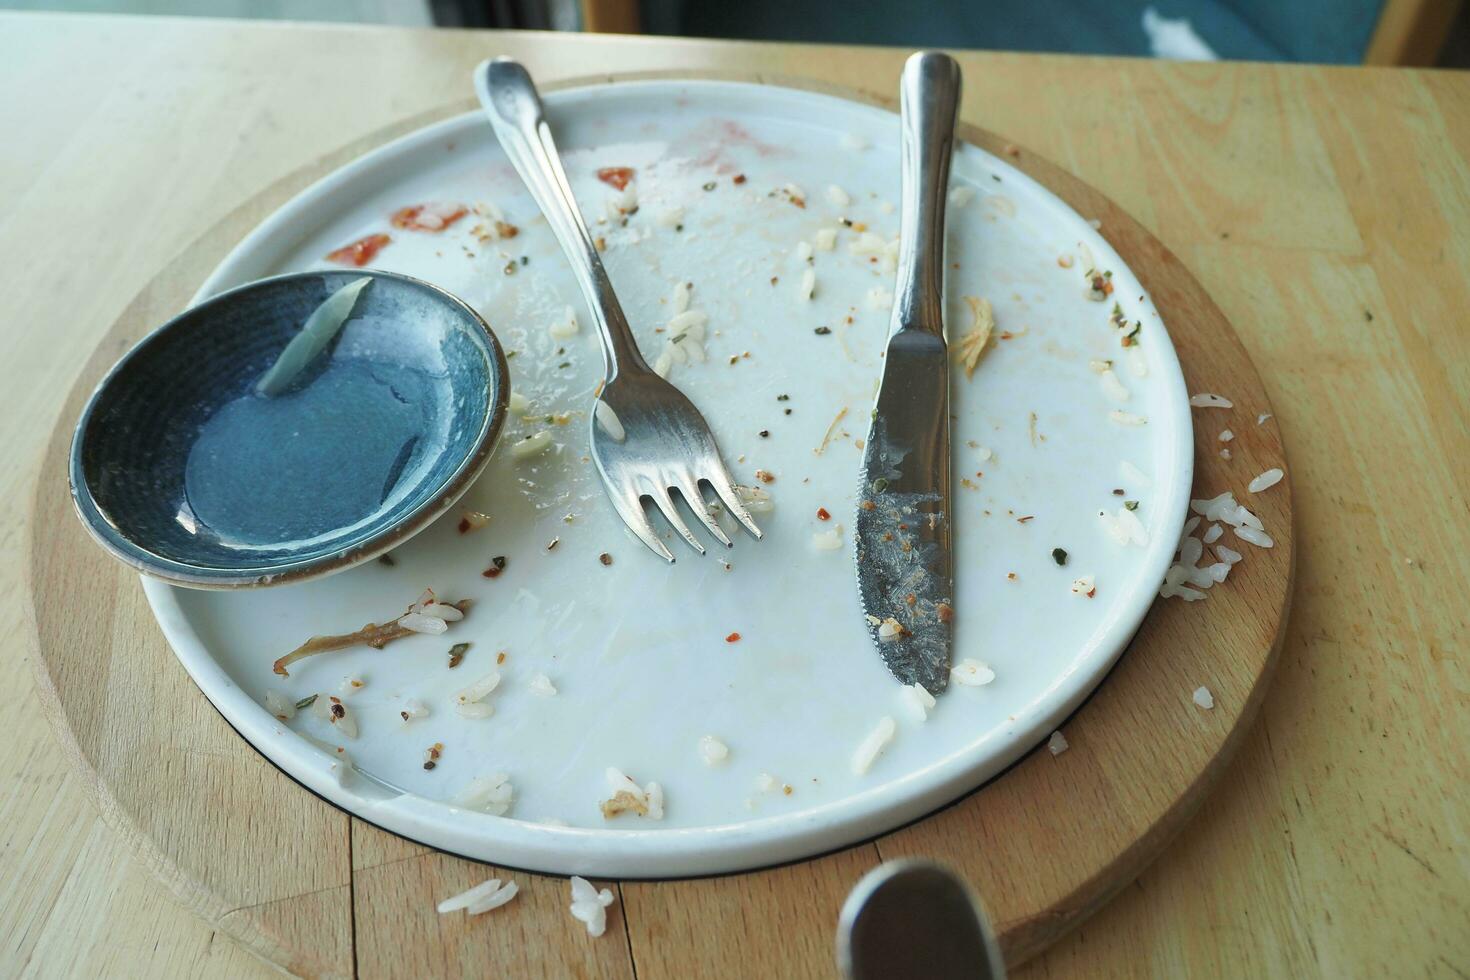 plato vacío después de comer en la mesa foto